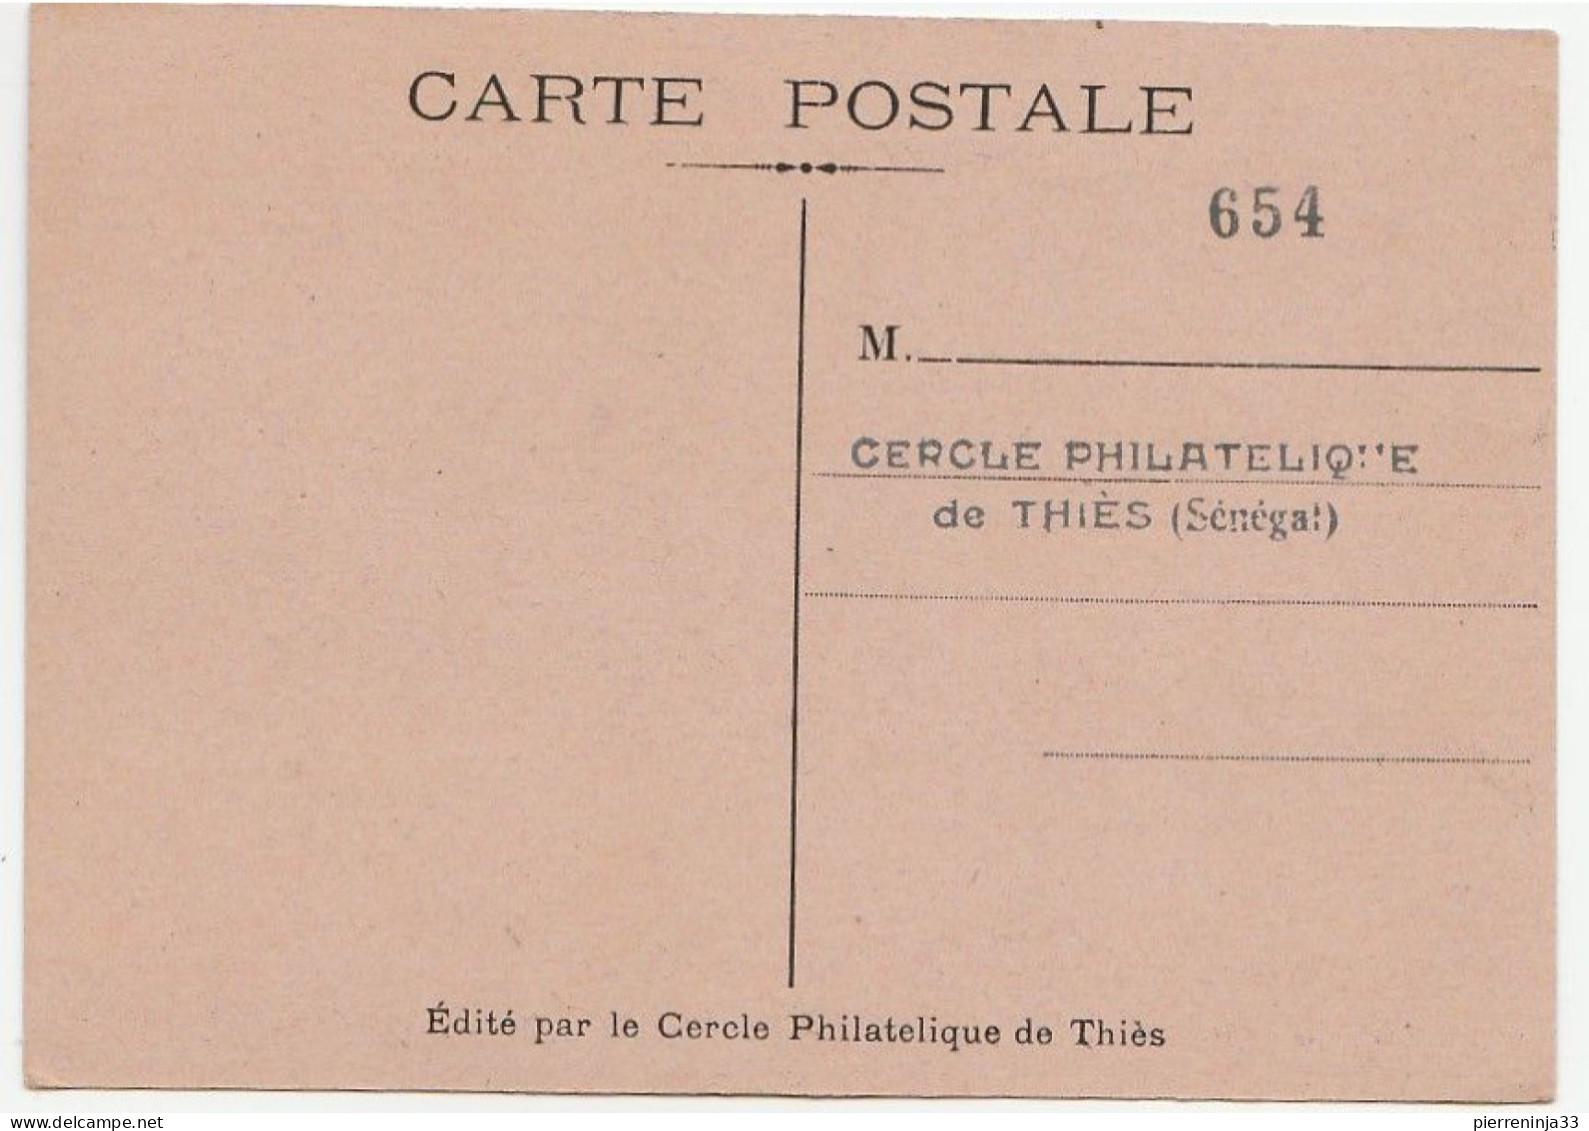 Carte Journée Du Timbre, Thiés / Sénégal, 1949 - Storia Postale